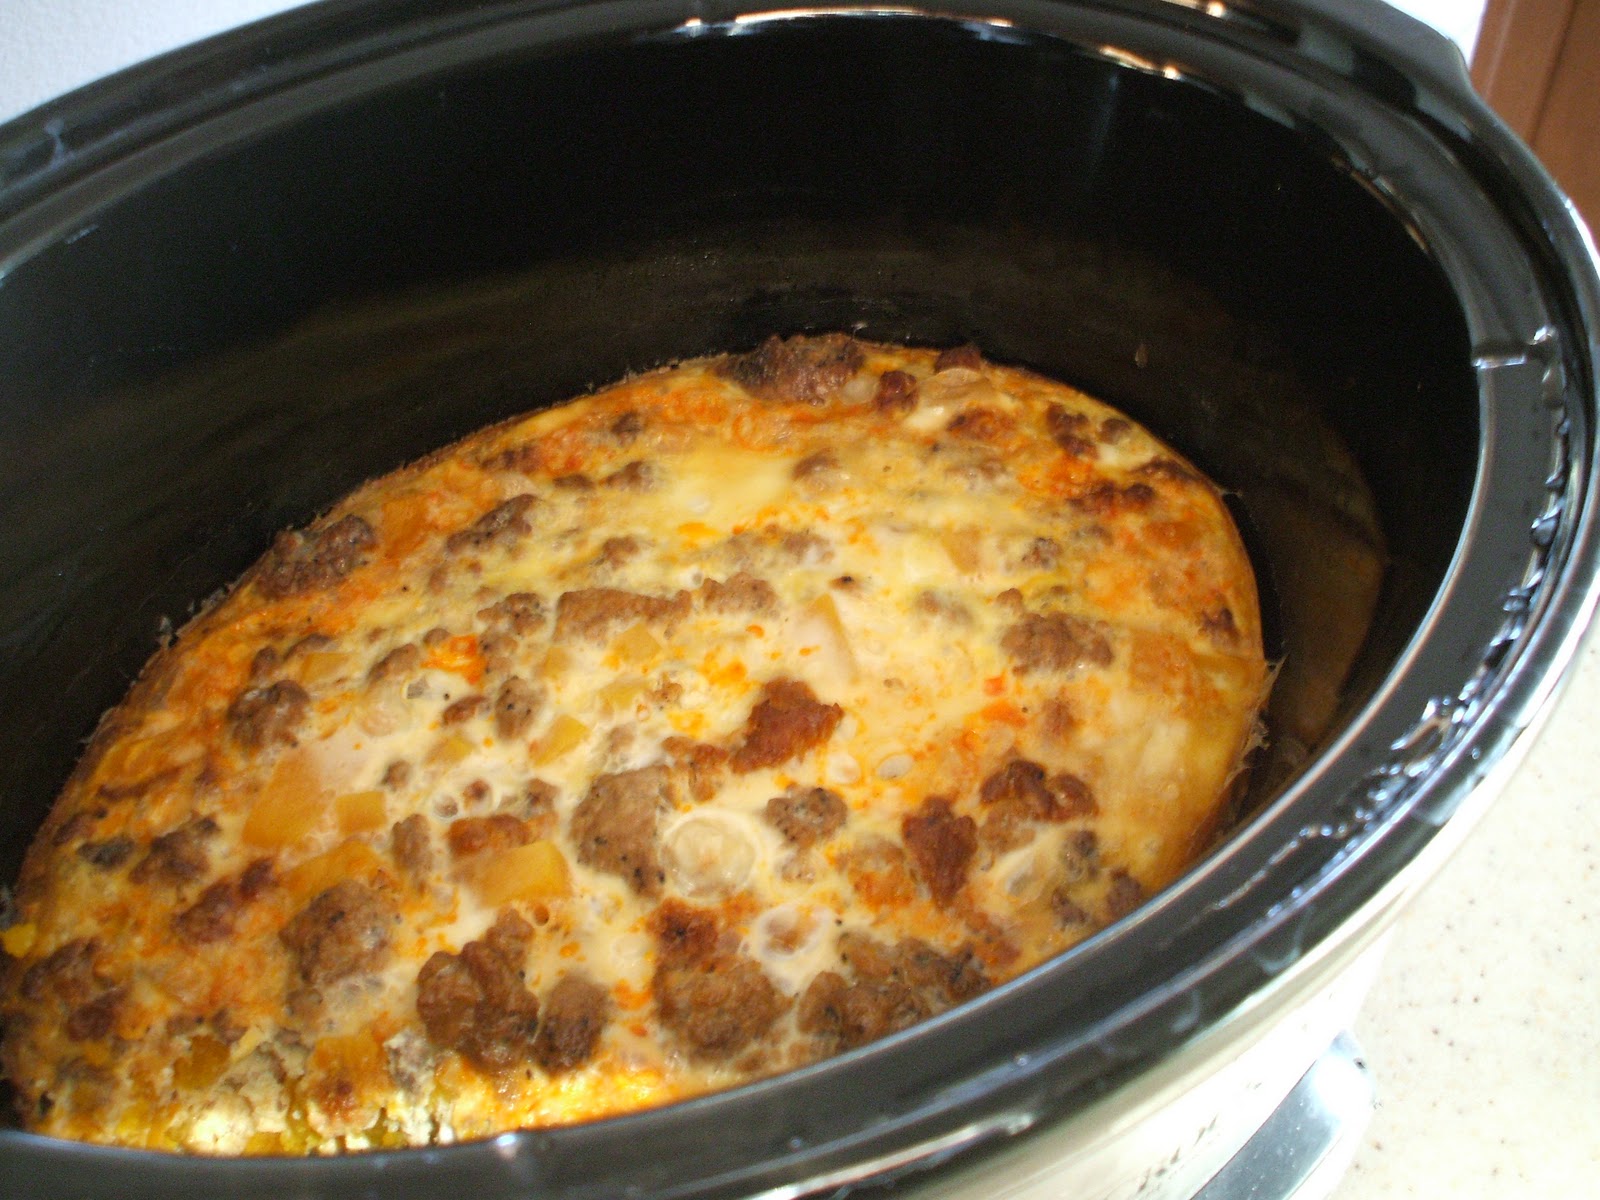 Spicy Paleo: Crock pot Breakfast Casserole